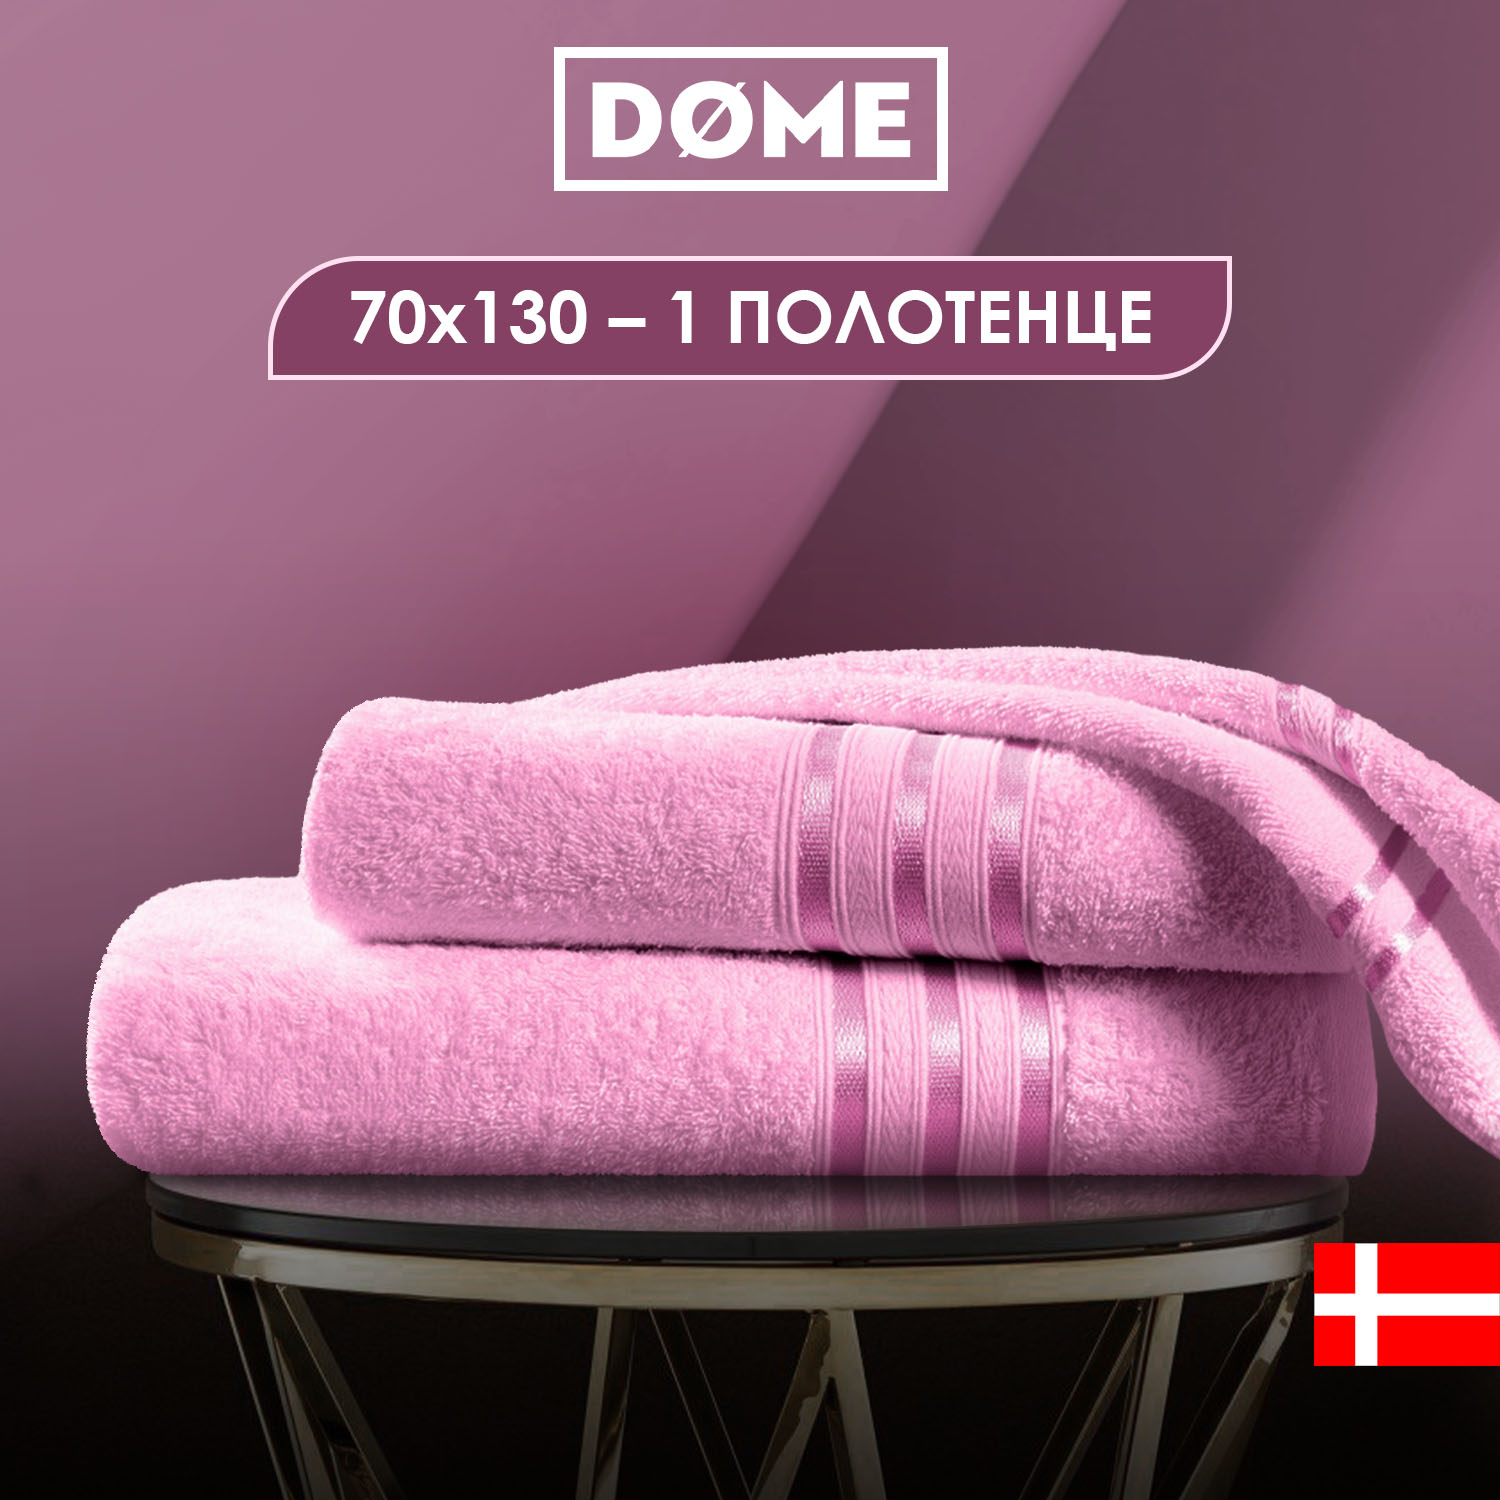 Полотенце Harmonika Цвет: Розовый (70х130 см), размер 70х130 см dme283566x Полотенце Harmonika Цвет: Розовый (70х130 см) - фото 1